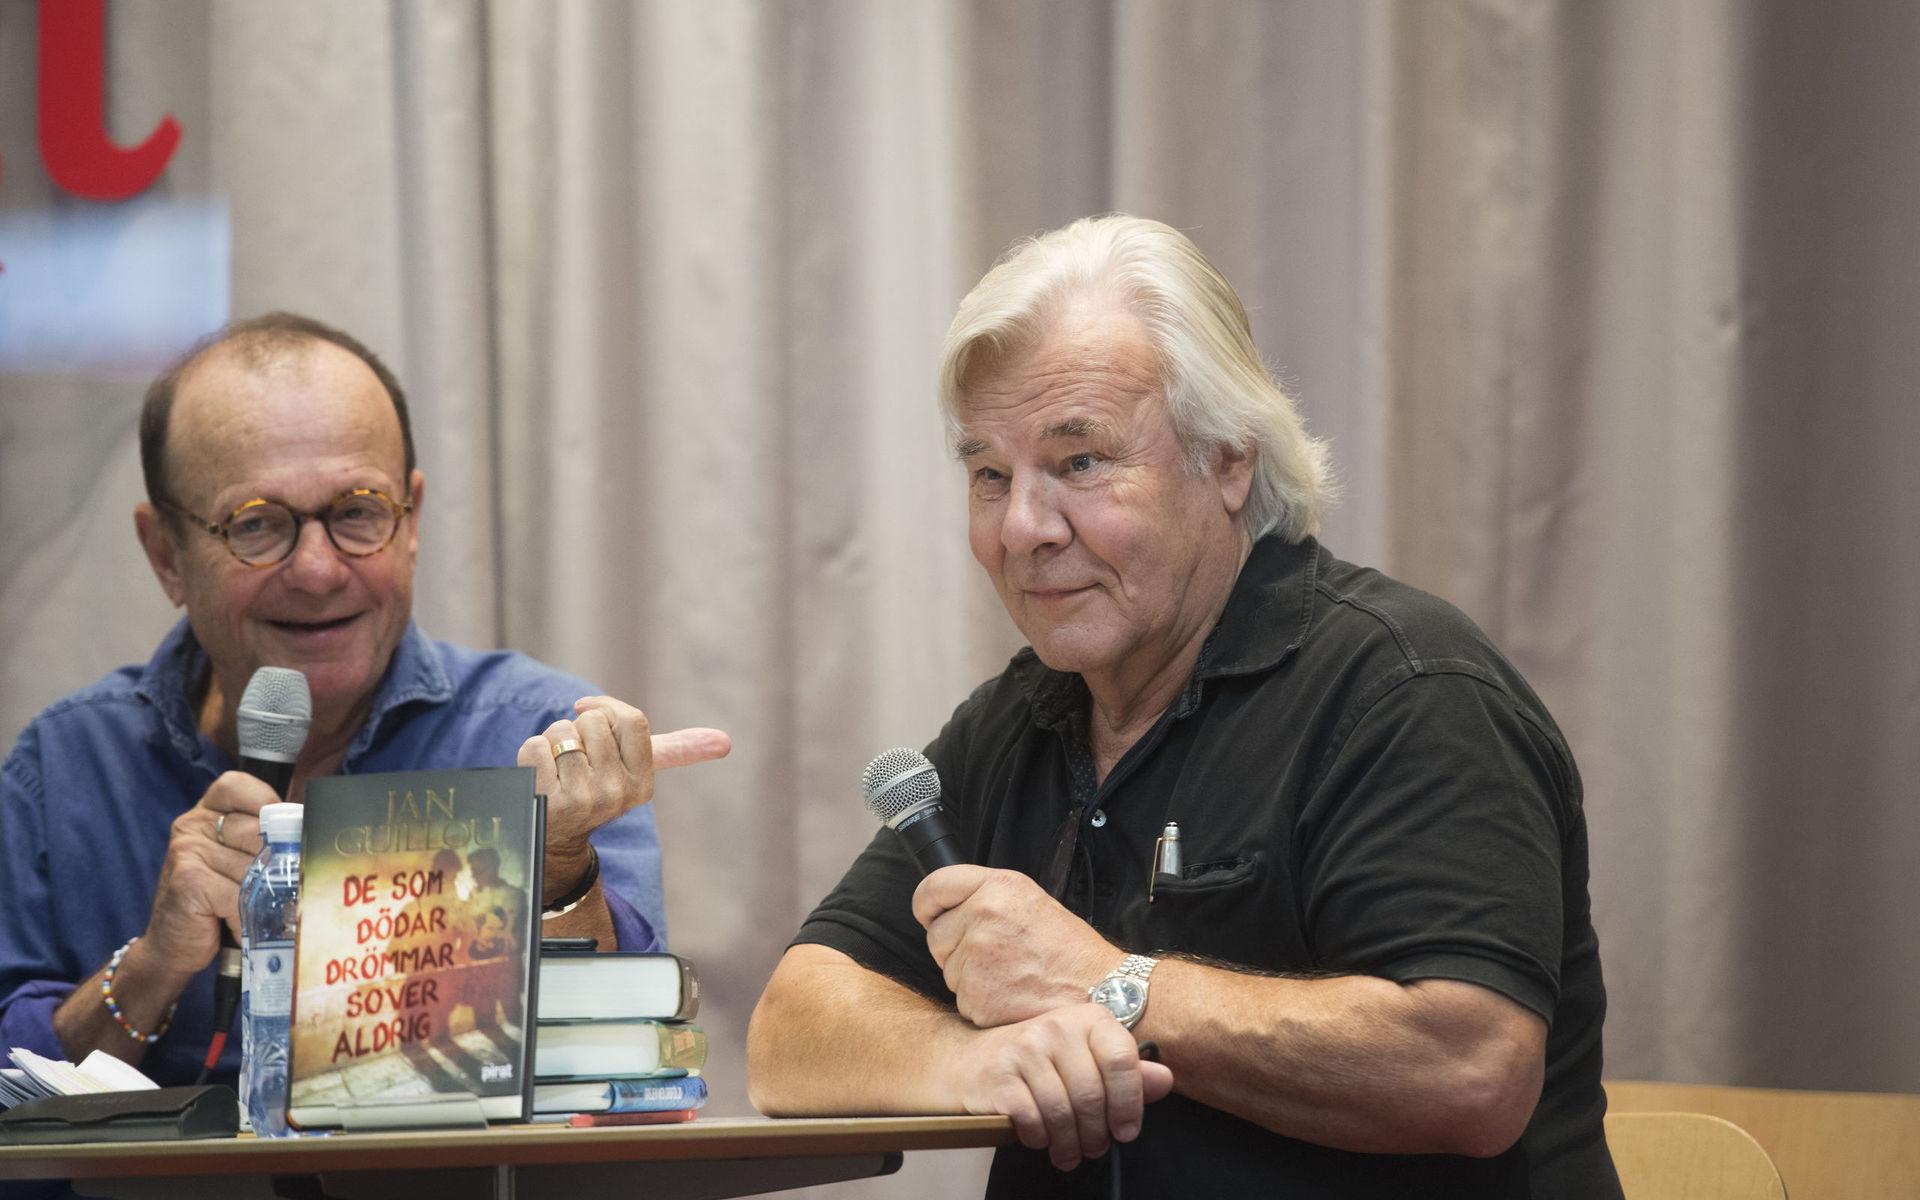 Författare Jan Guillou intervjuas i Piratförlagets monter vid bokmässan på fredagen.